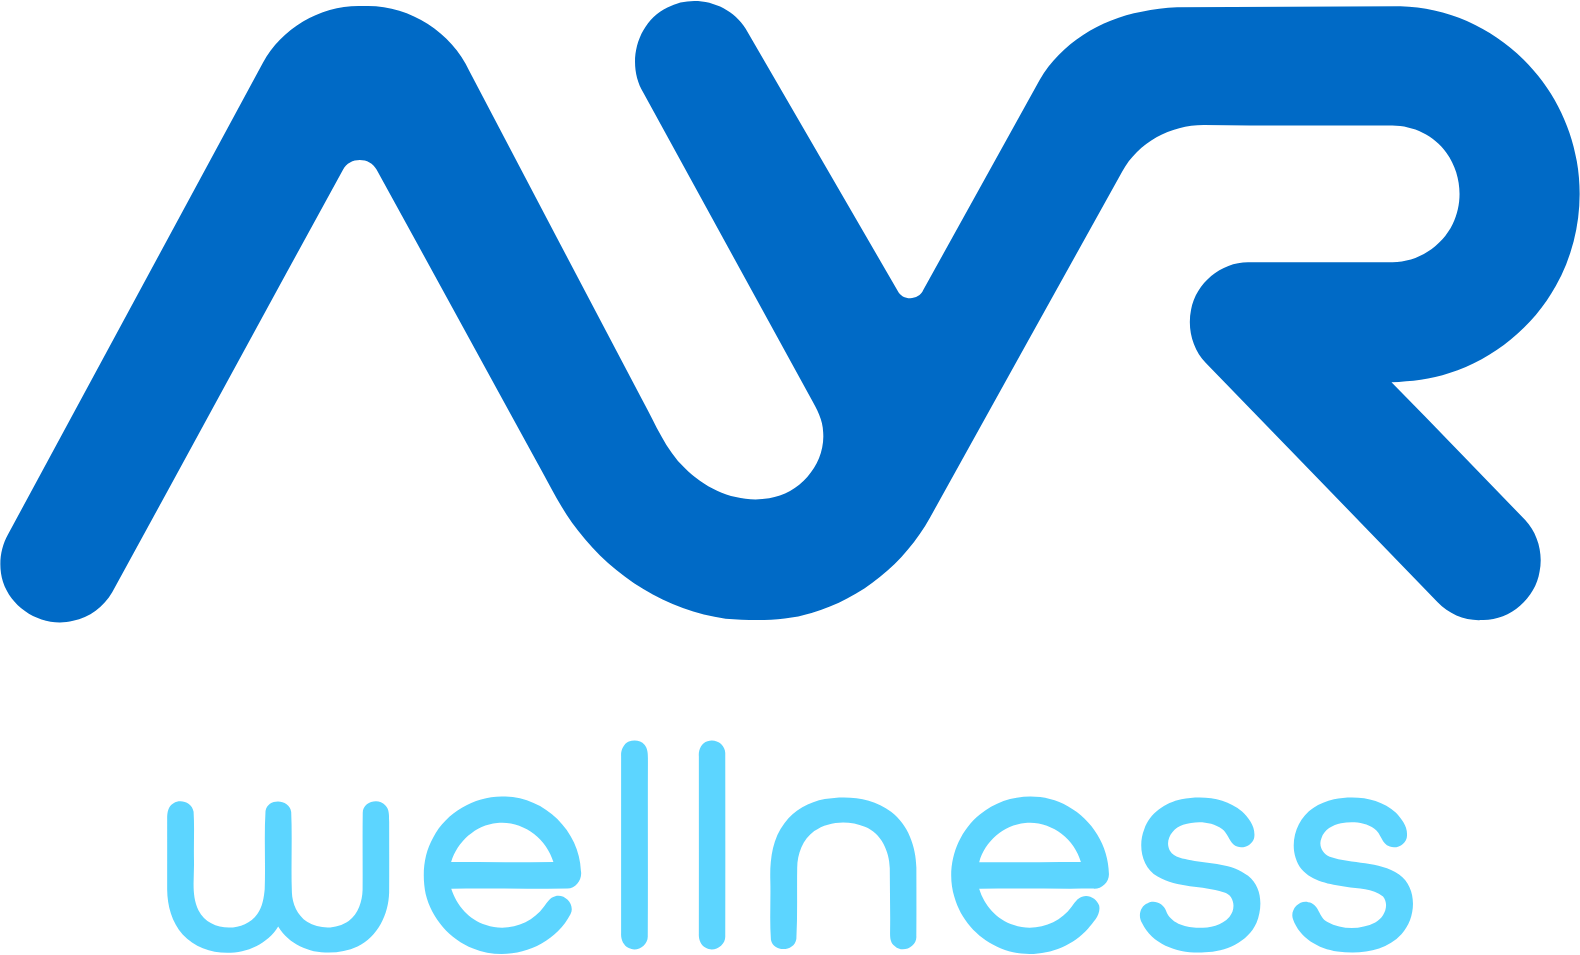 Ayr Wellness logo large (transparent PNG)